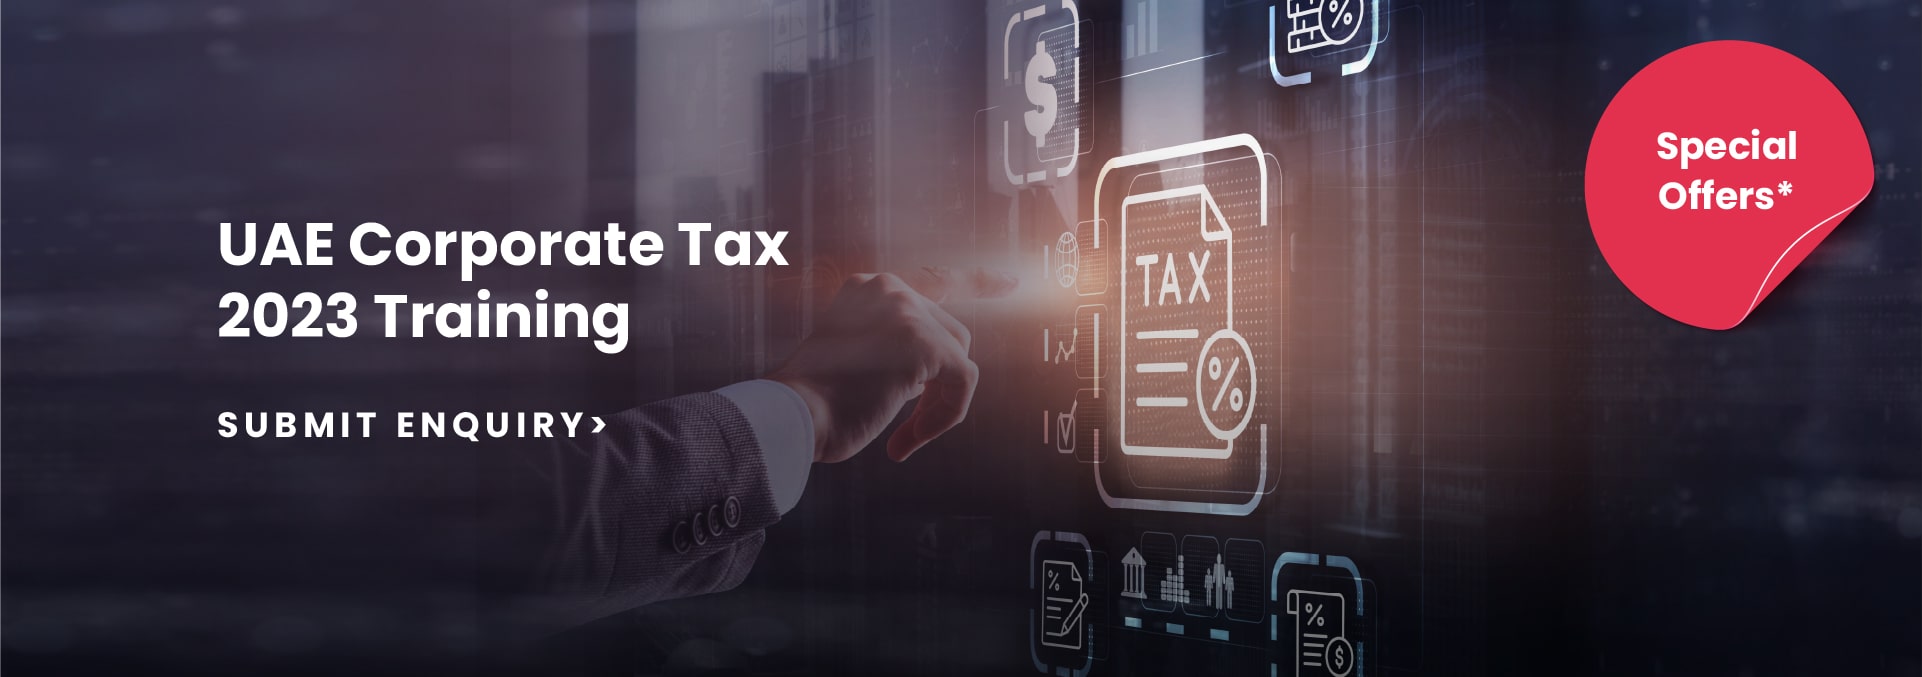 UAE Corporate Tax 2023 by NADIA Global